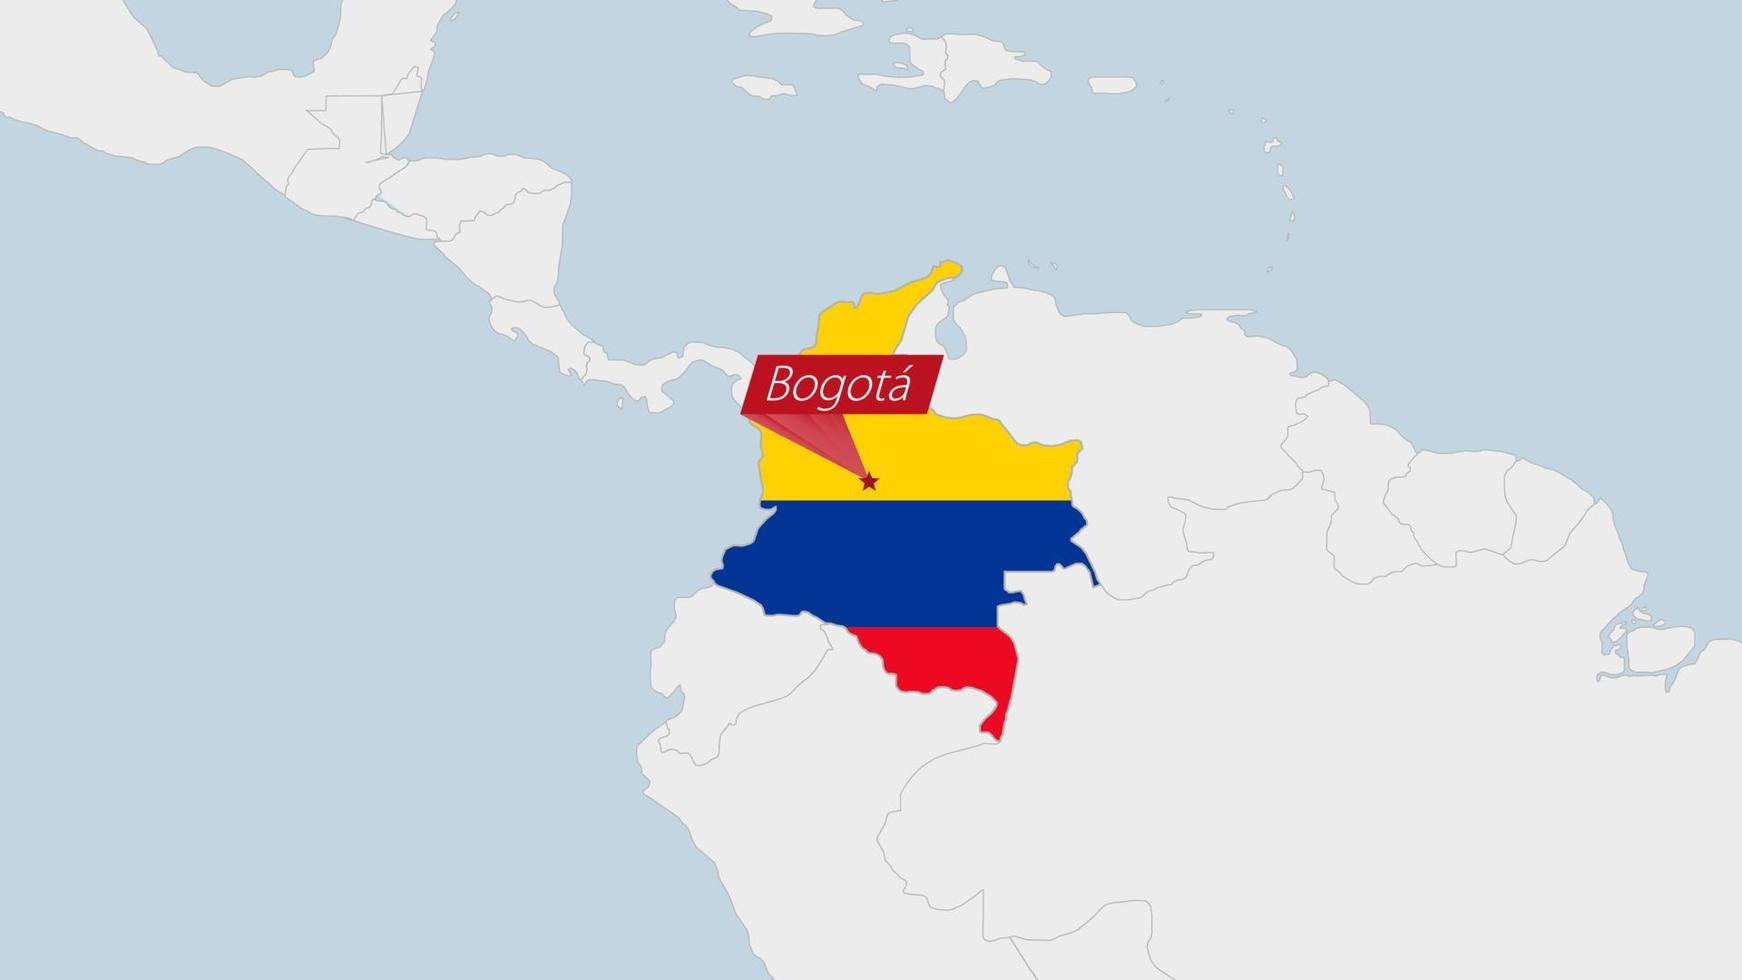 Colombia kaart gemarkeerd in Colombia vlag kleuren en pin van land hoofdstad bogotá. vector